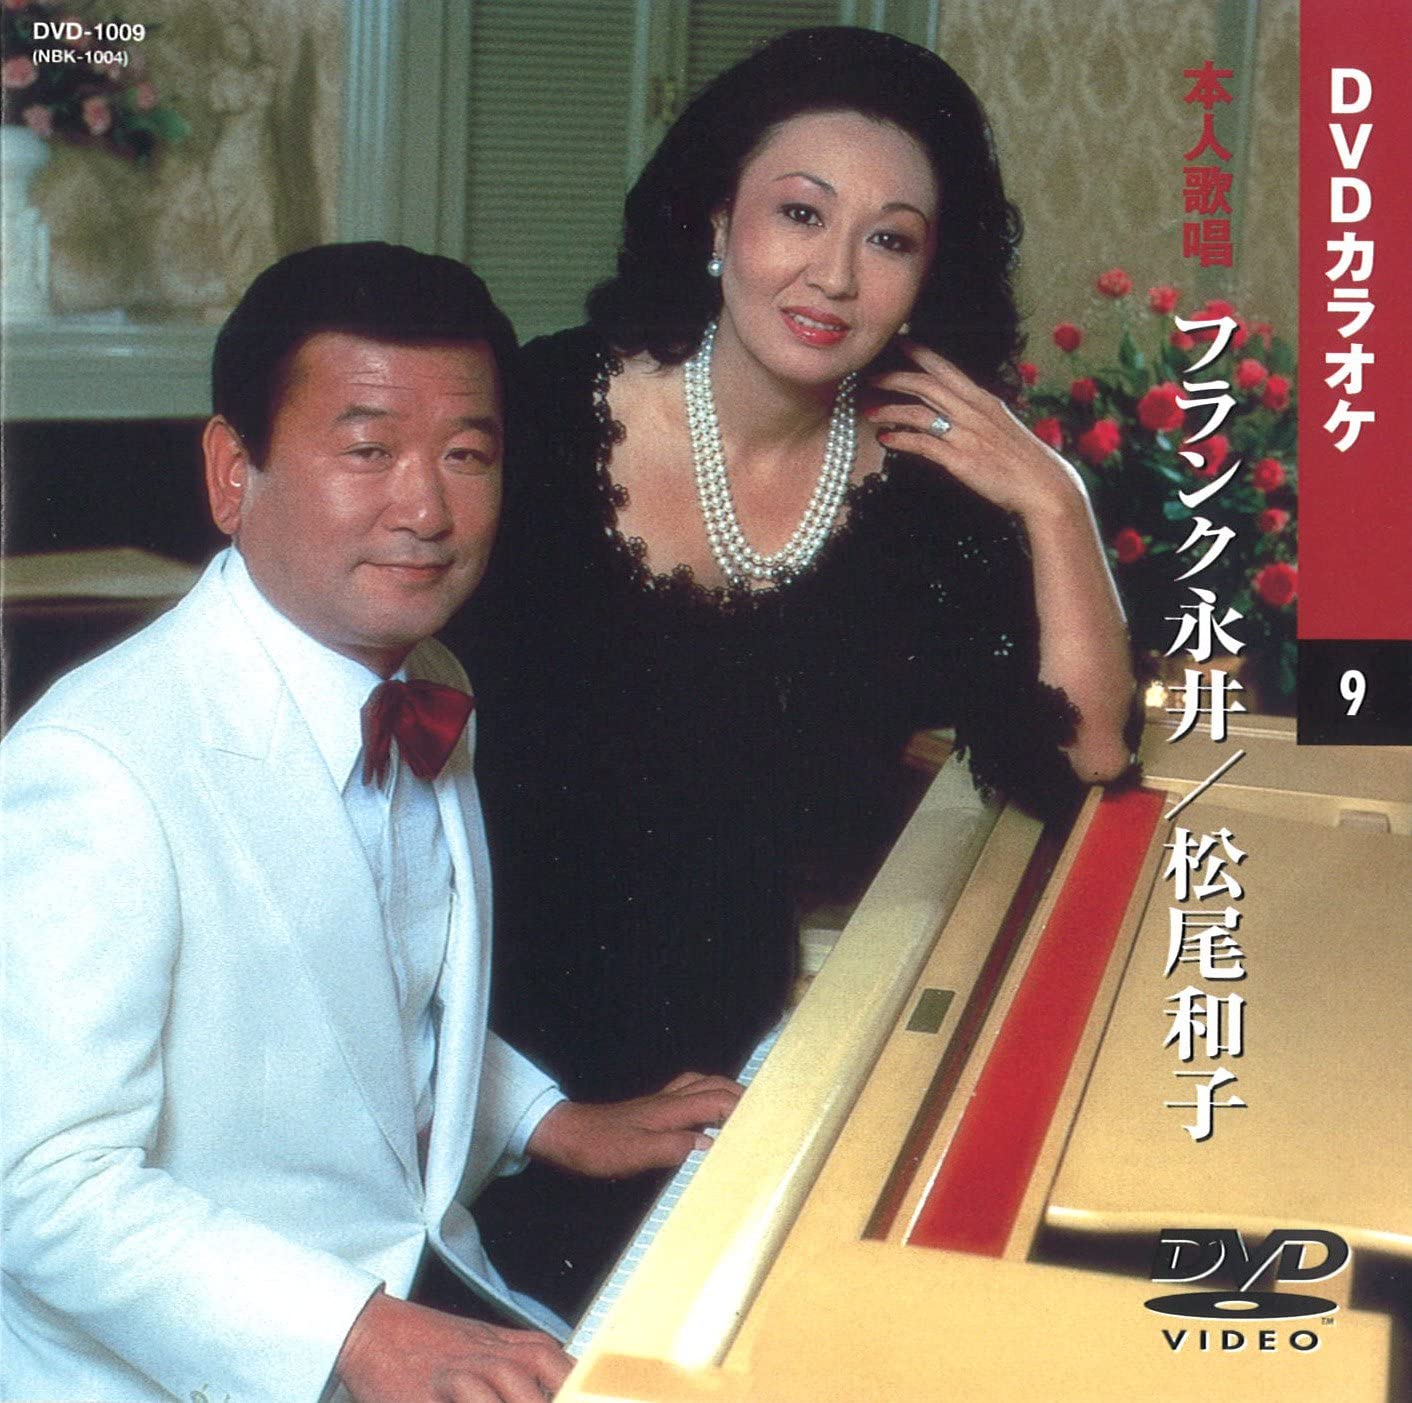 【本人歌唱DVDカラオケ】 フランク永井・松尾和子 (DVDカラオケ) DVD-1009